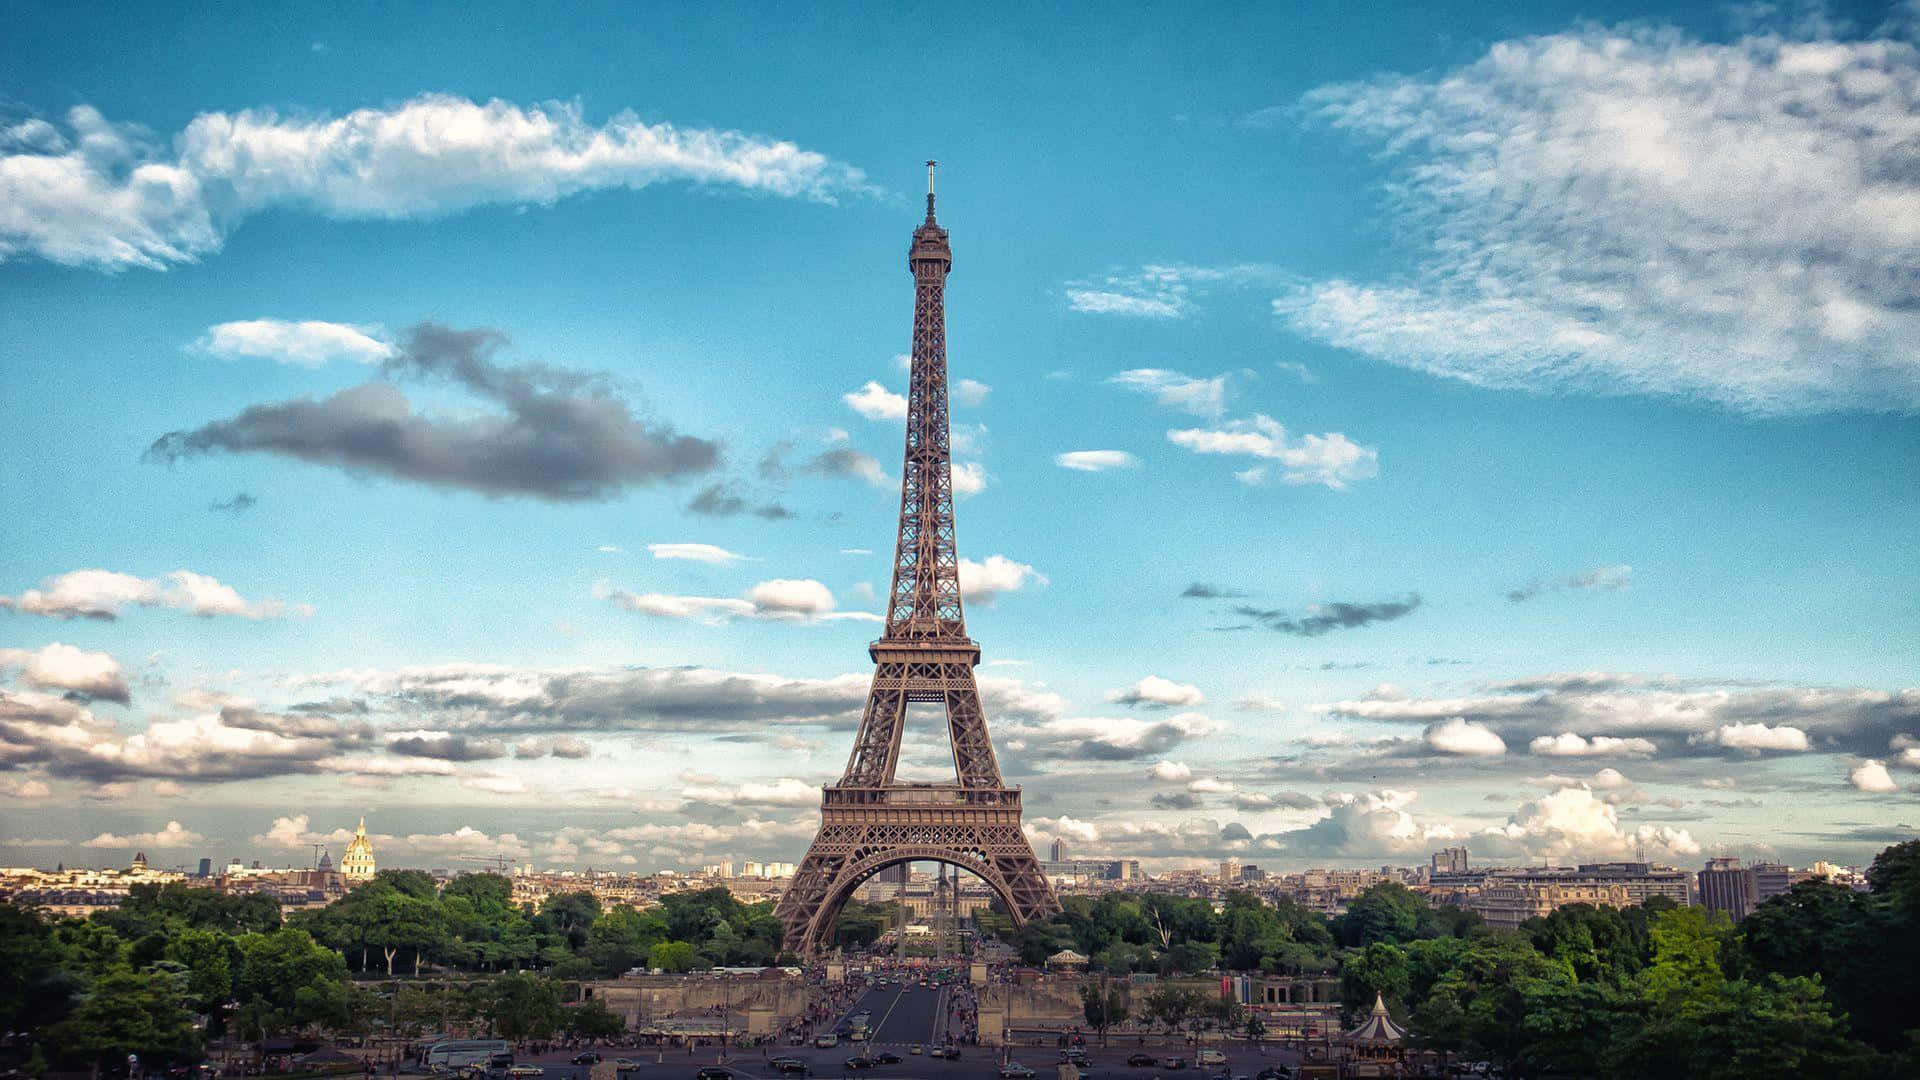 Fångaen Vy Av Den Ikoniska Eiffeltornet I Paris.